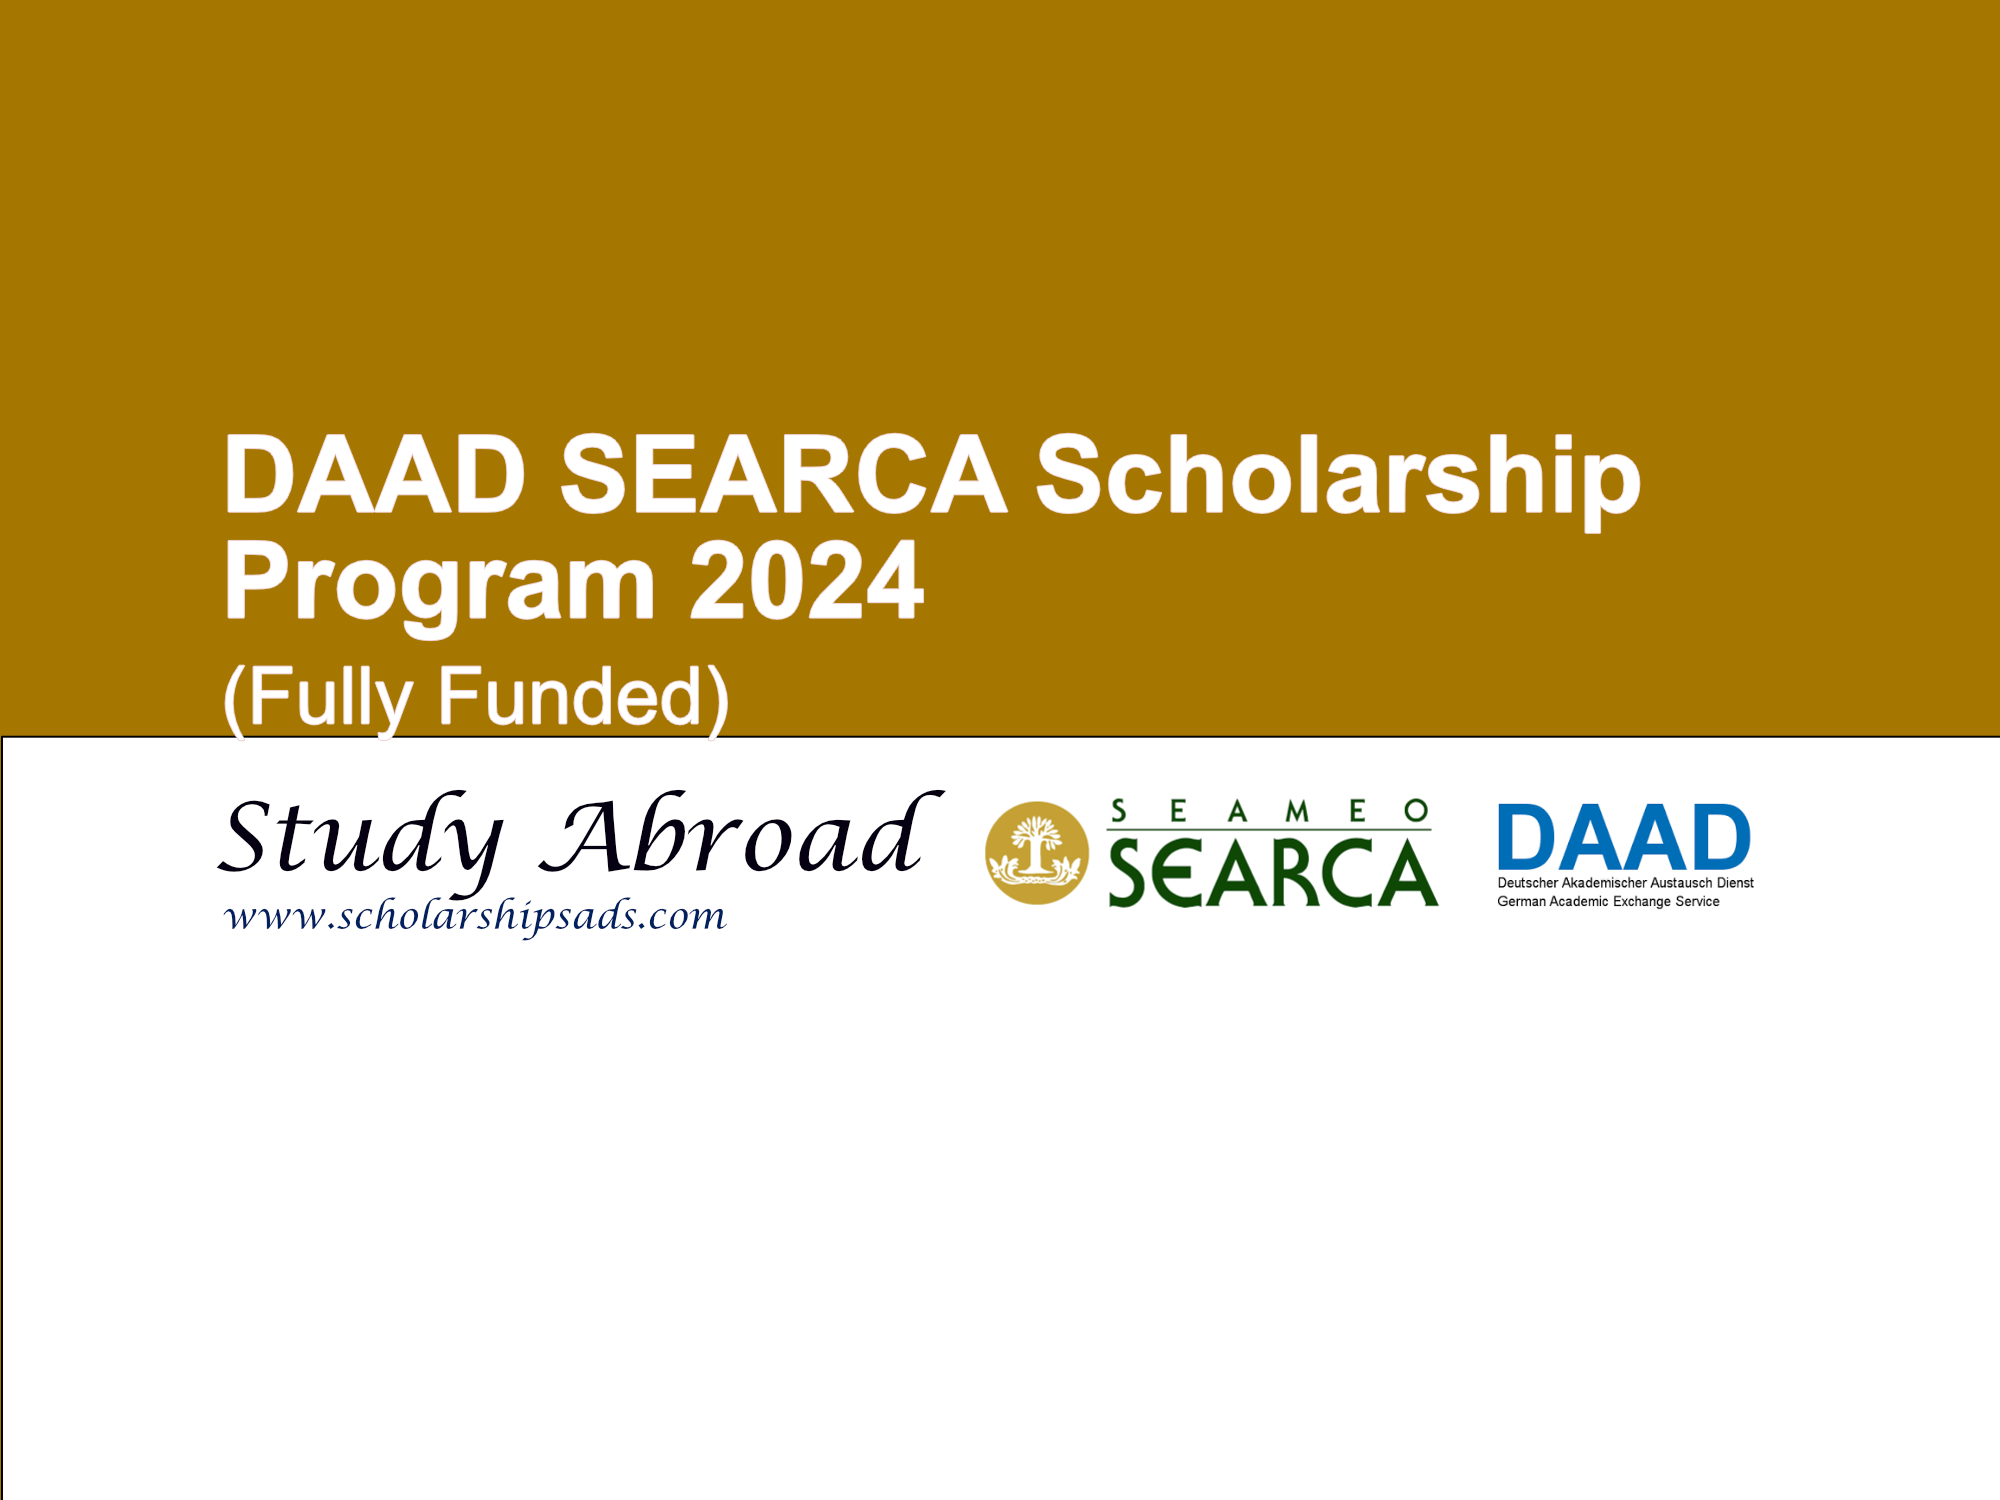 DAAD SEARCA Scholarships.